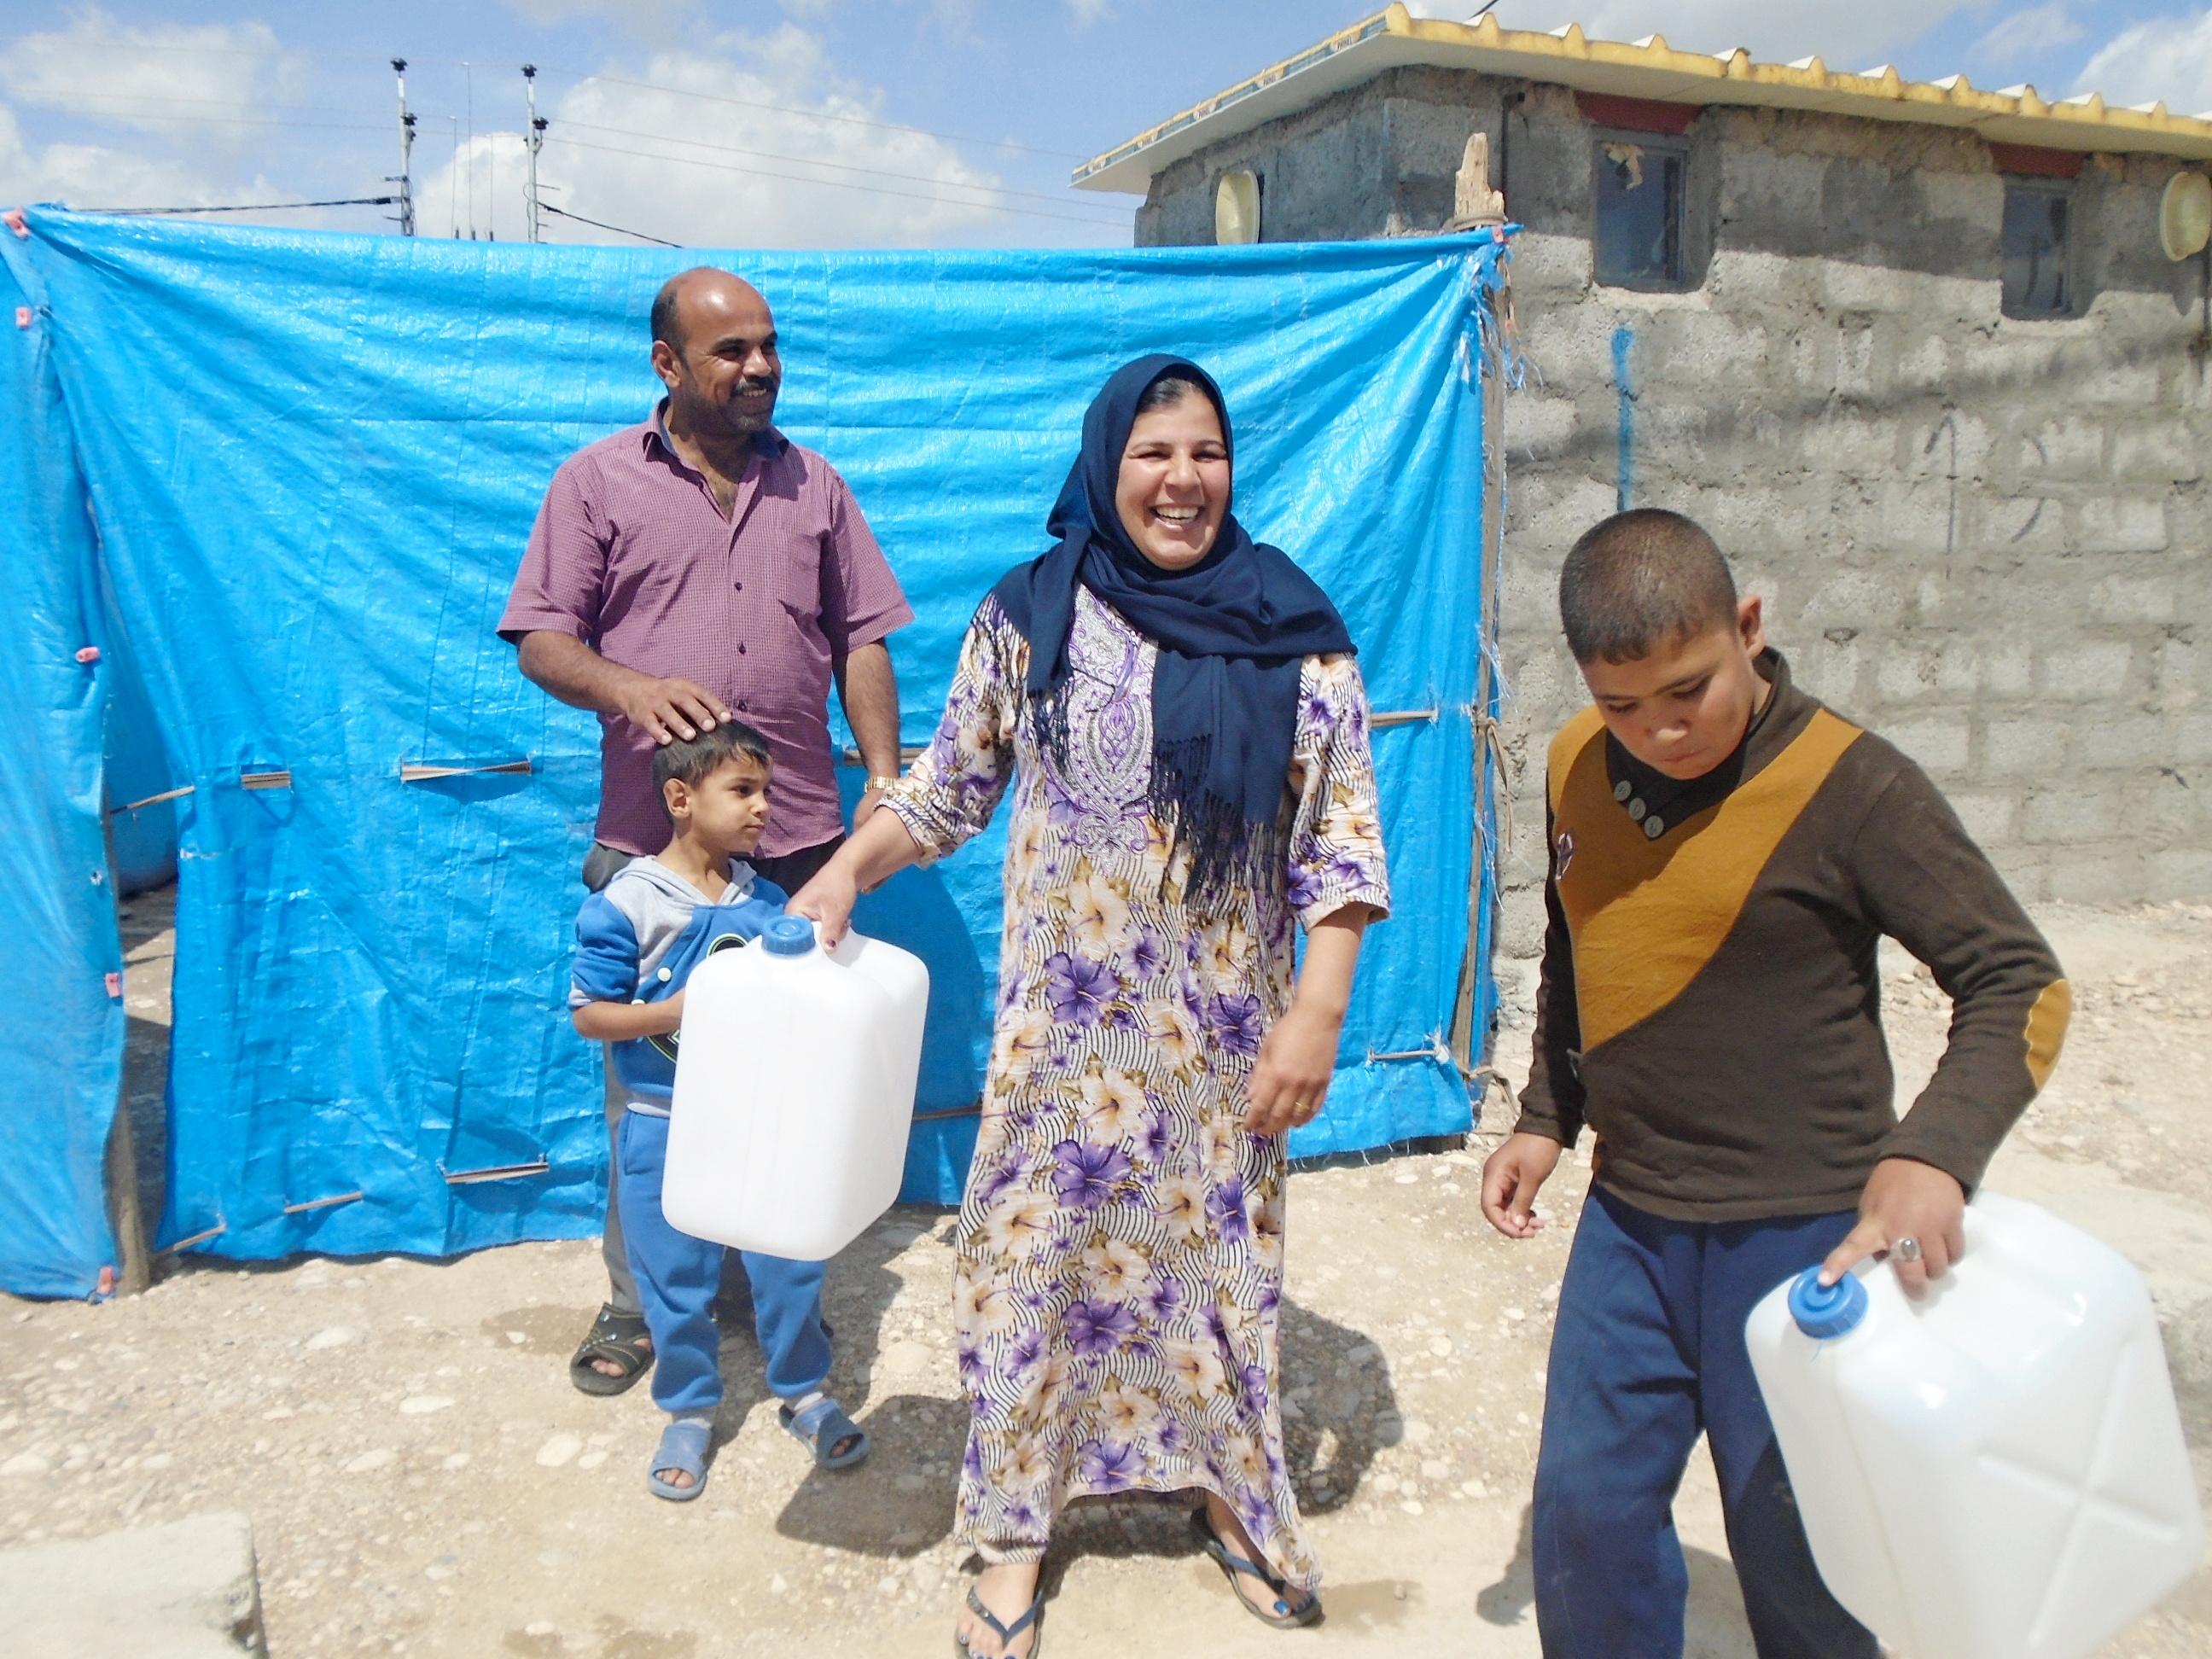 Familie mit neuen Kanistern für ihr Wasser in der Notunterkunft